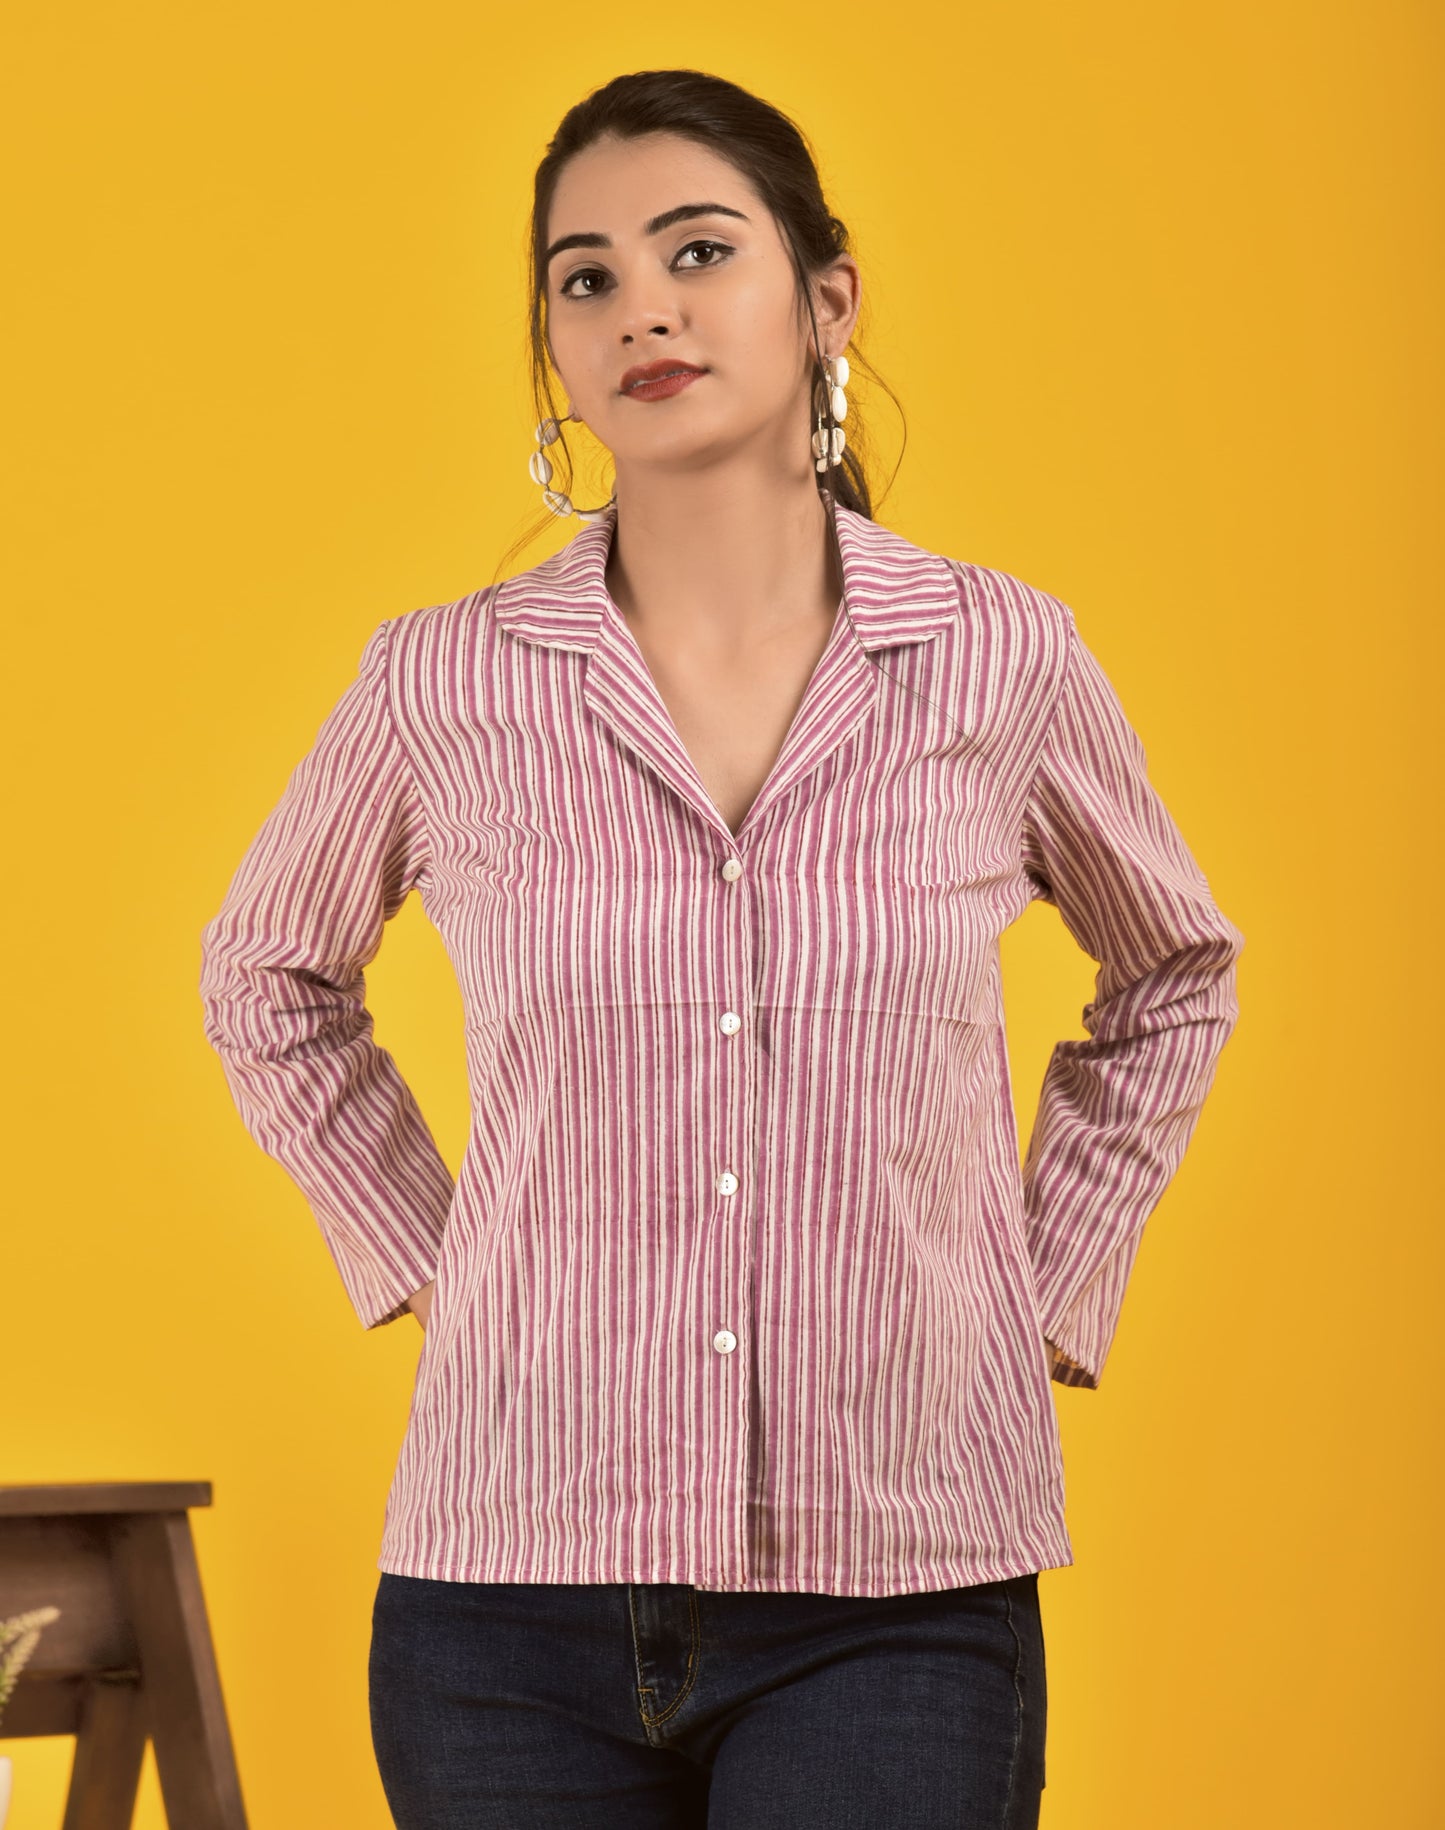 Block Print shirt for women in smart Maroon stripe